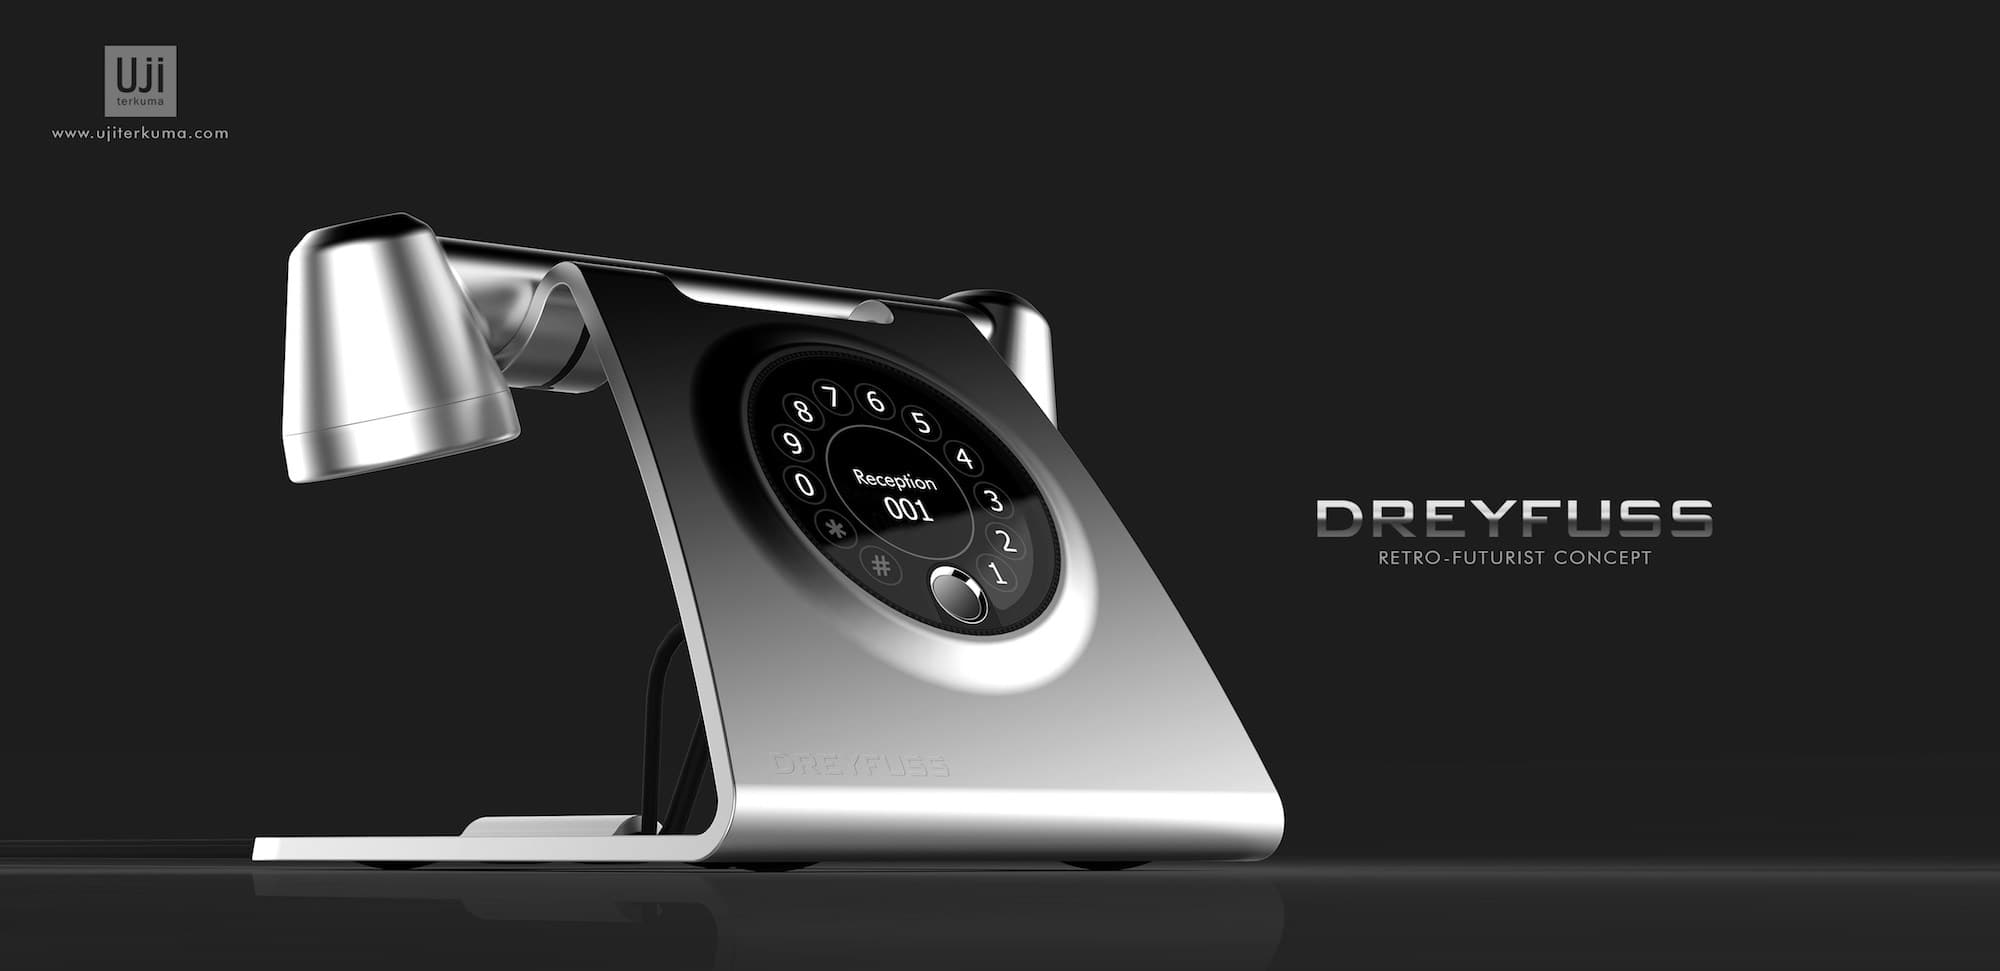 Dreyfuss phone concept by Uji Terkuma 03